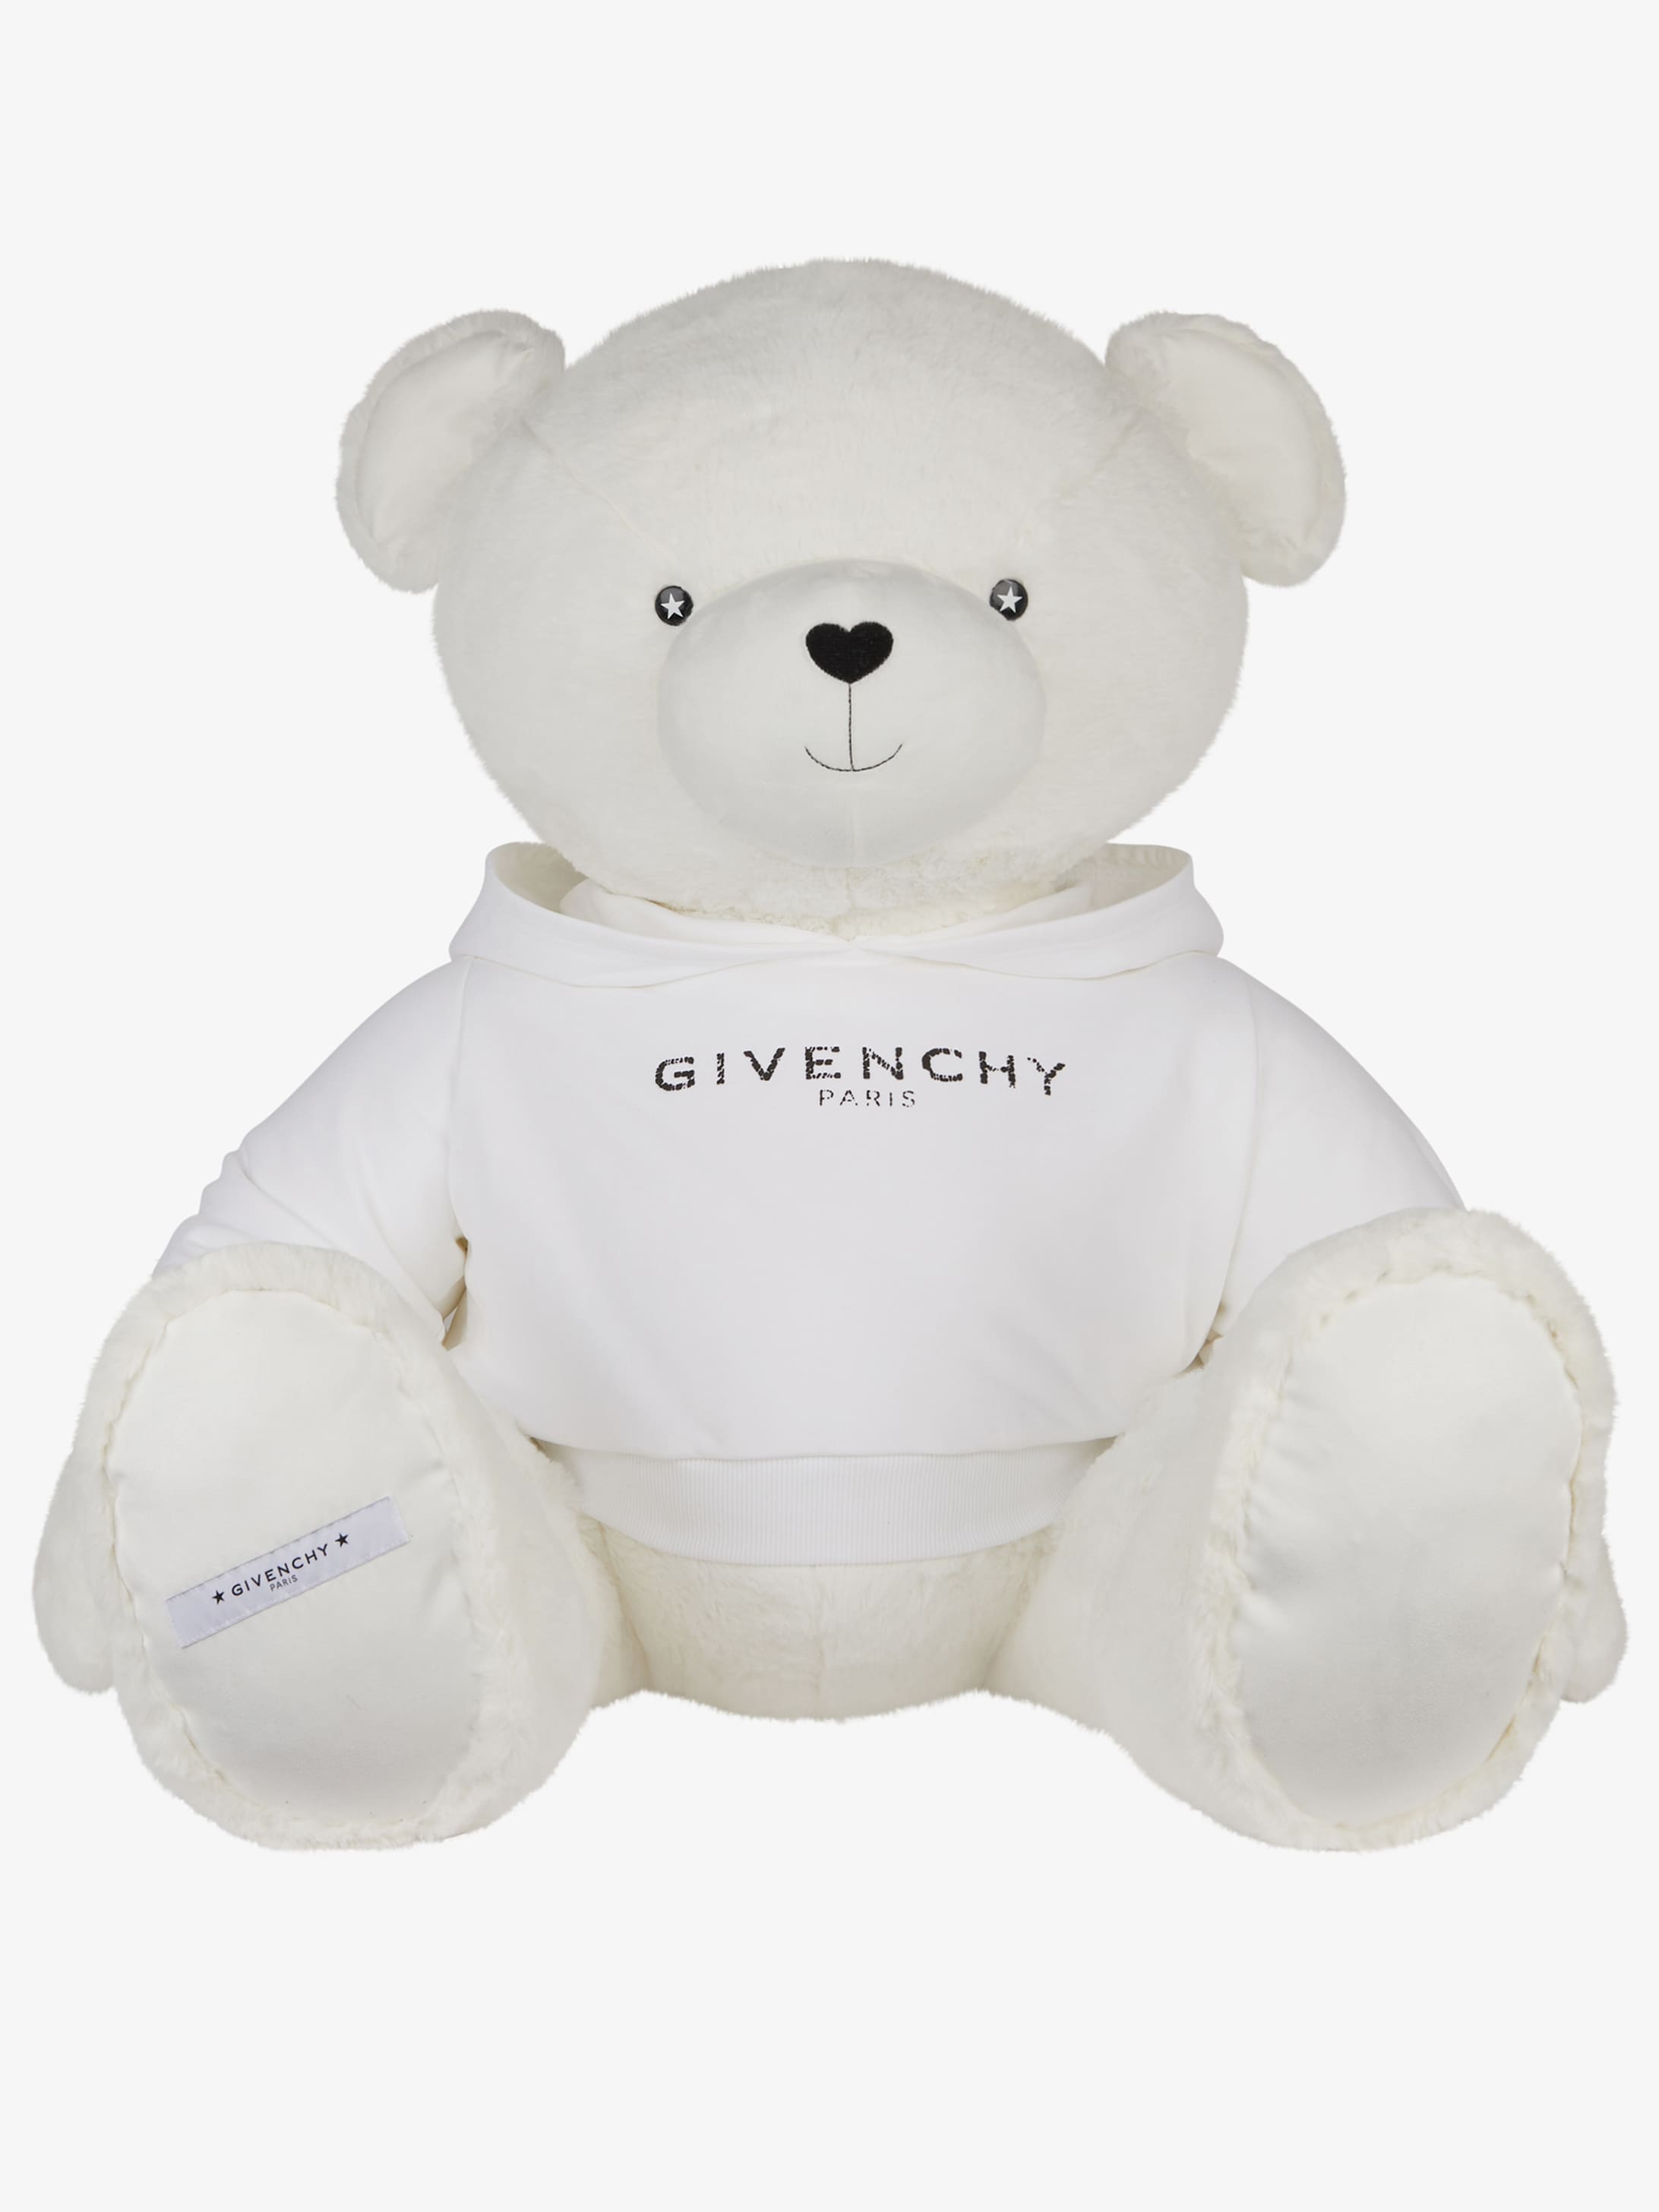 Giant Teddy bear GIVENCHY PARIS | GIVENCHY Paris